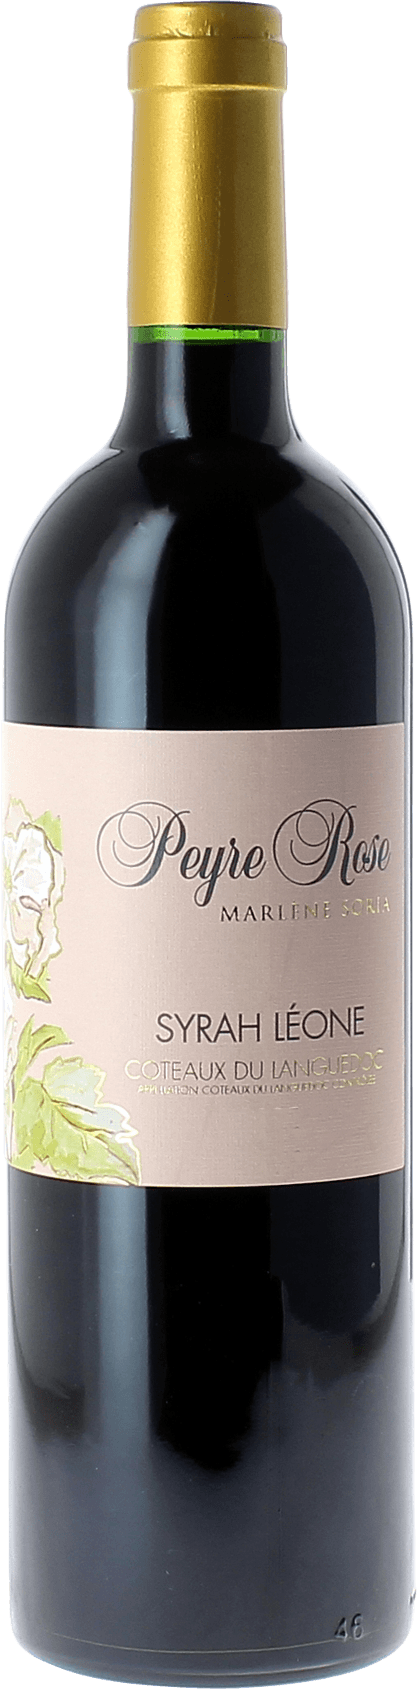 Peyre rose syrah leone 2003  Coteaux du languedoc AOC, Languedoc